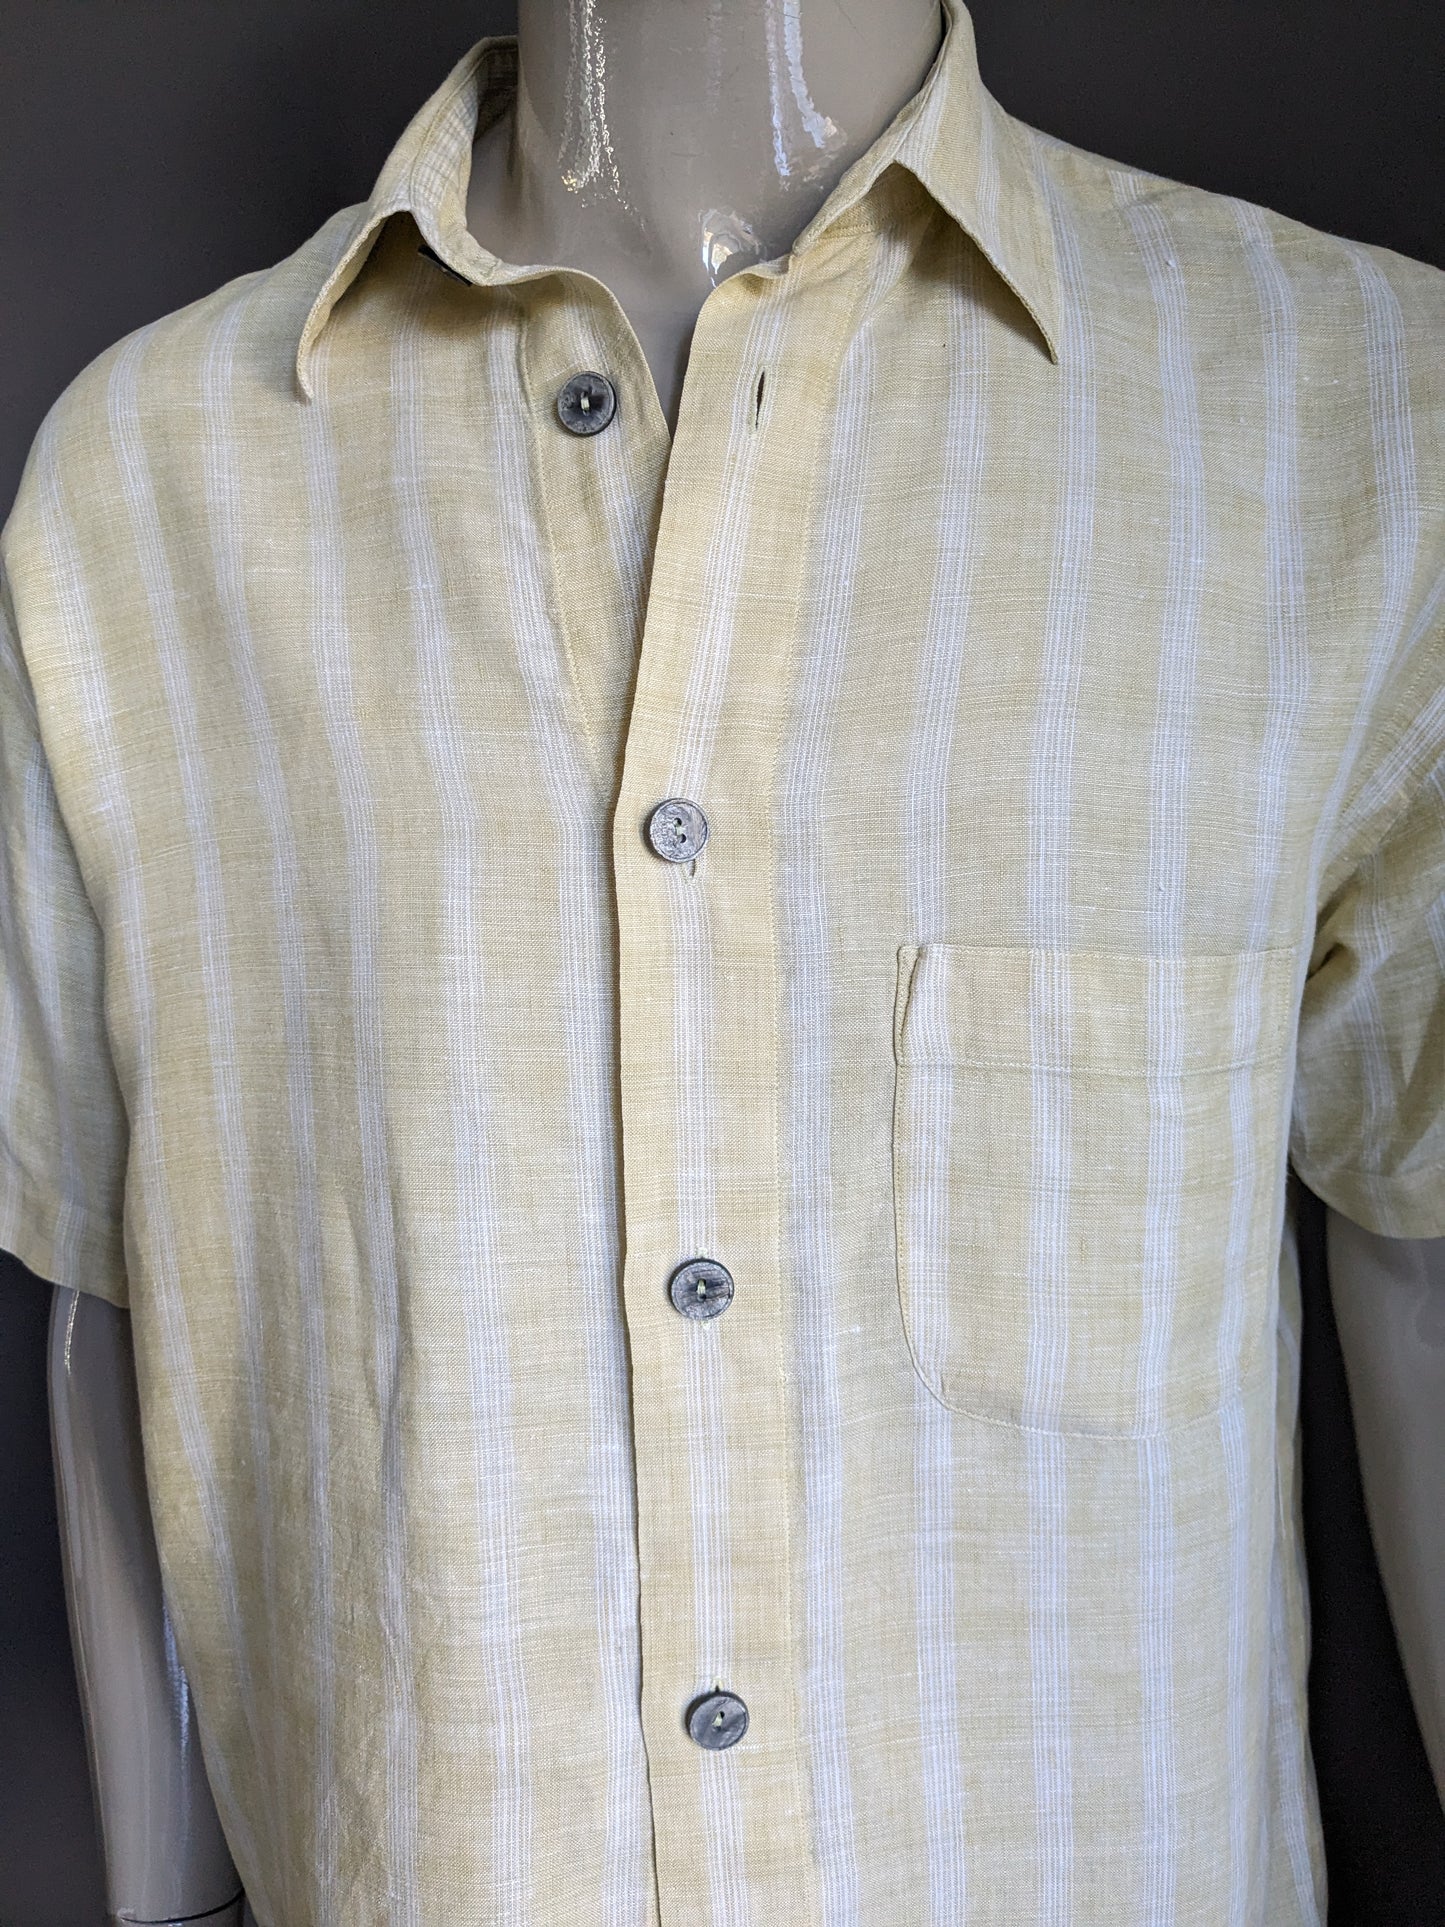 Signe de lin vintage Shirt Shirt Sleeve. Boutons plus grands. À carreaux en jaune blanc. Taille l / xl.